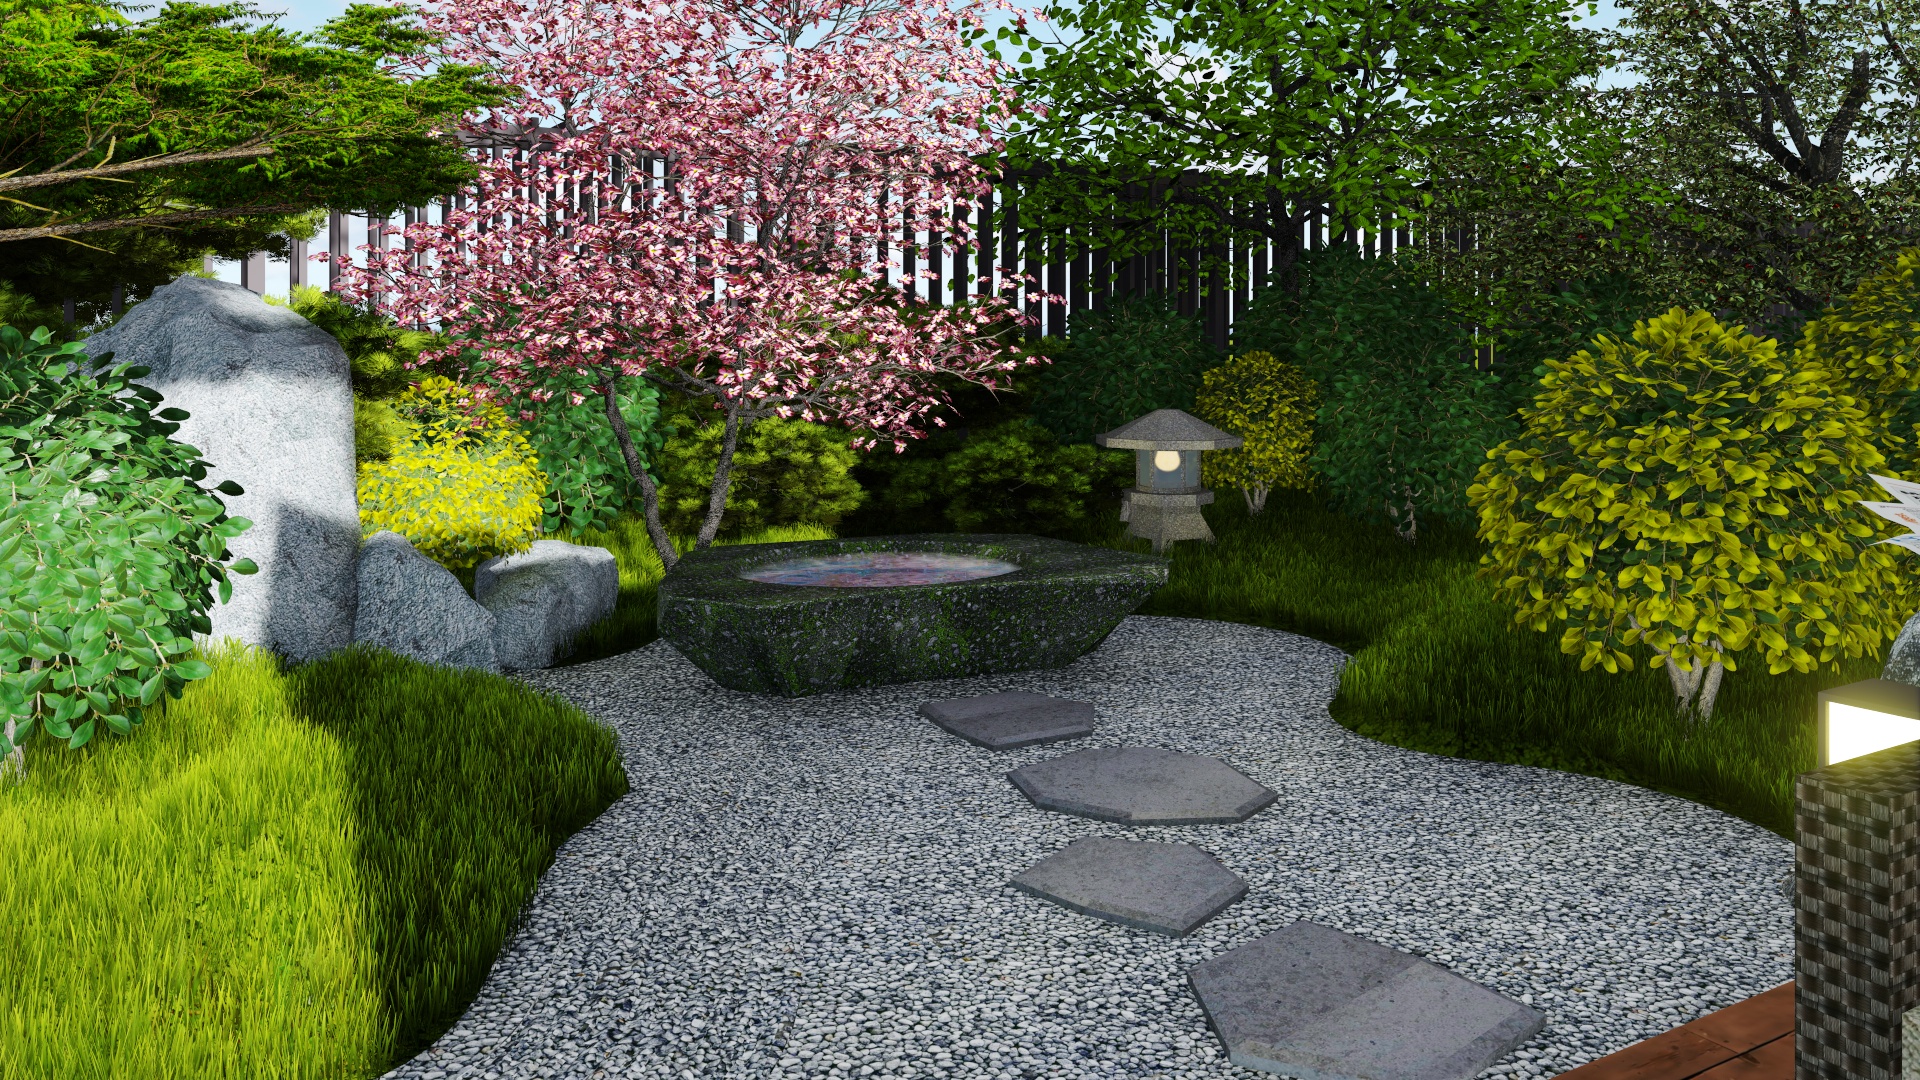 分享14个庭院花园设计案例,总有你喜欢的那款吧!